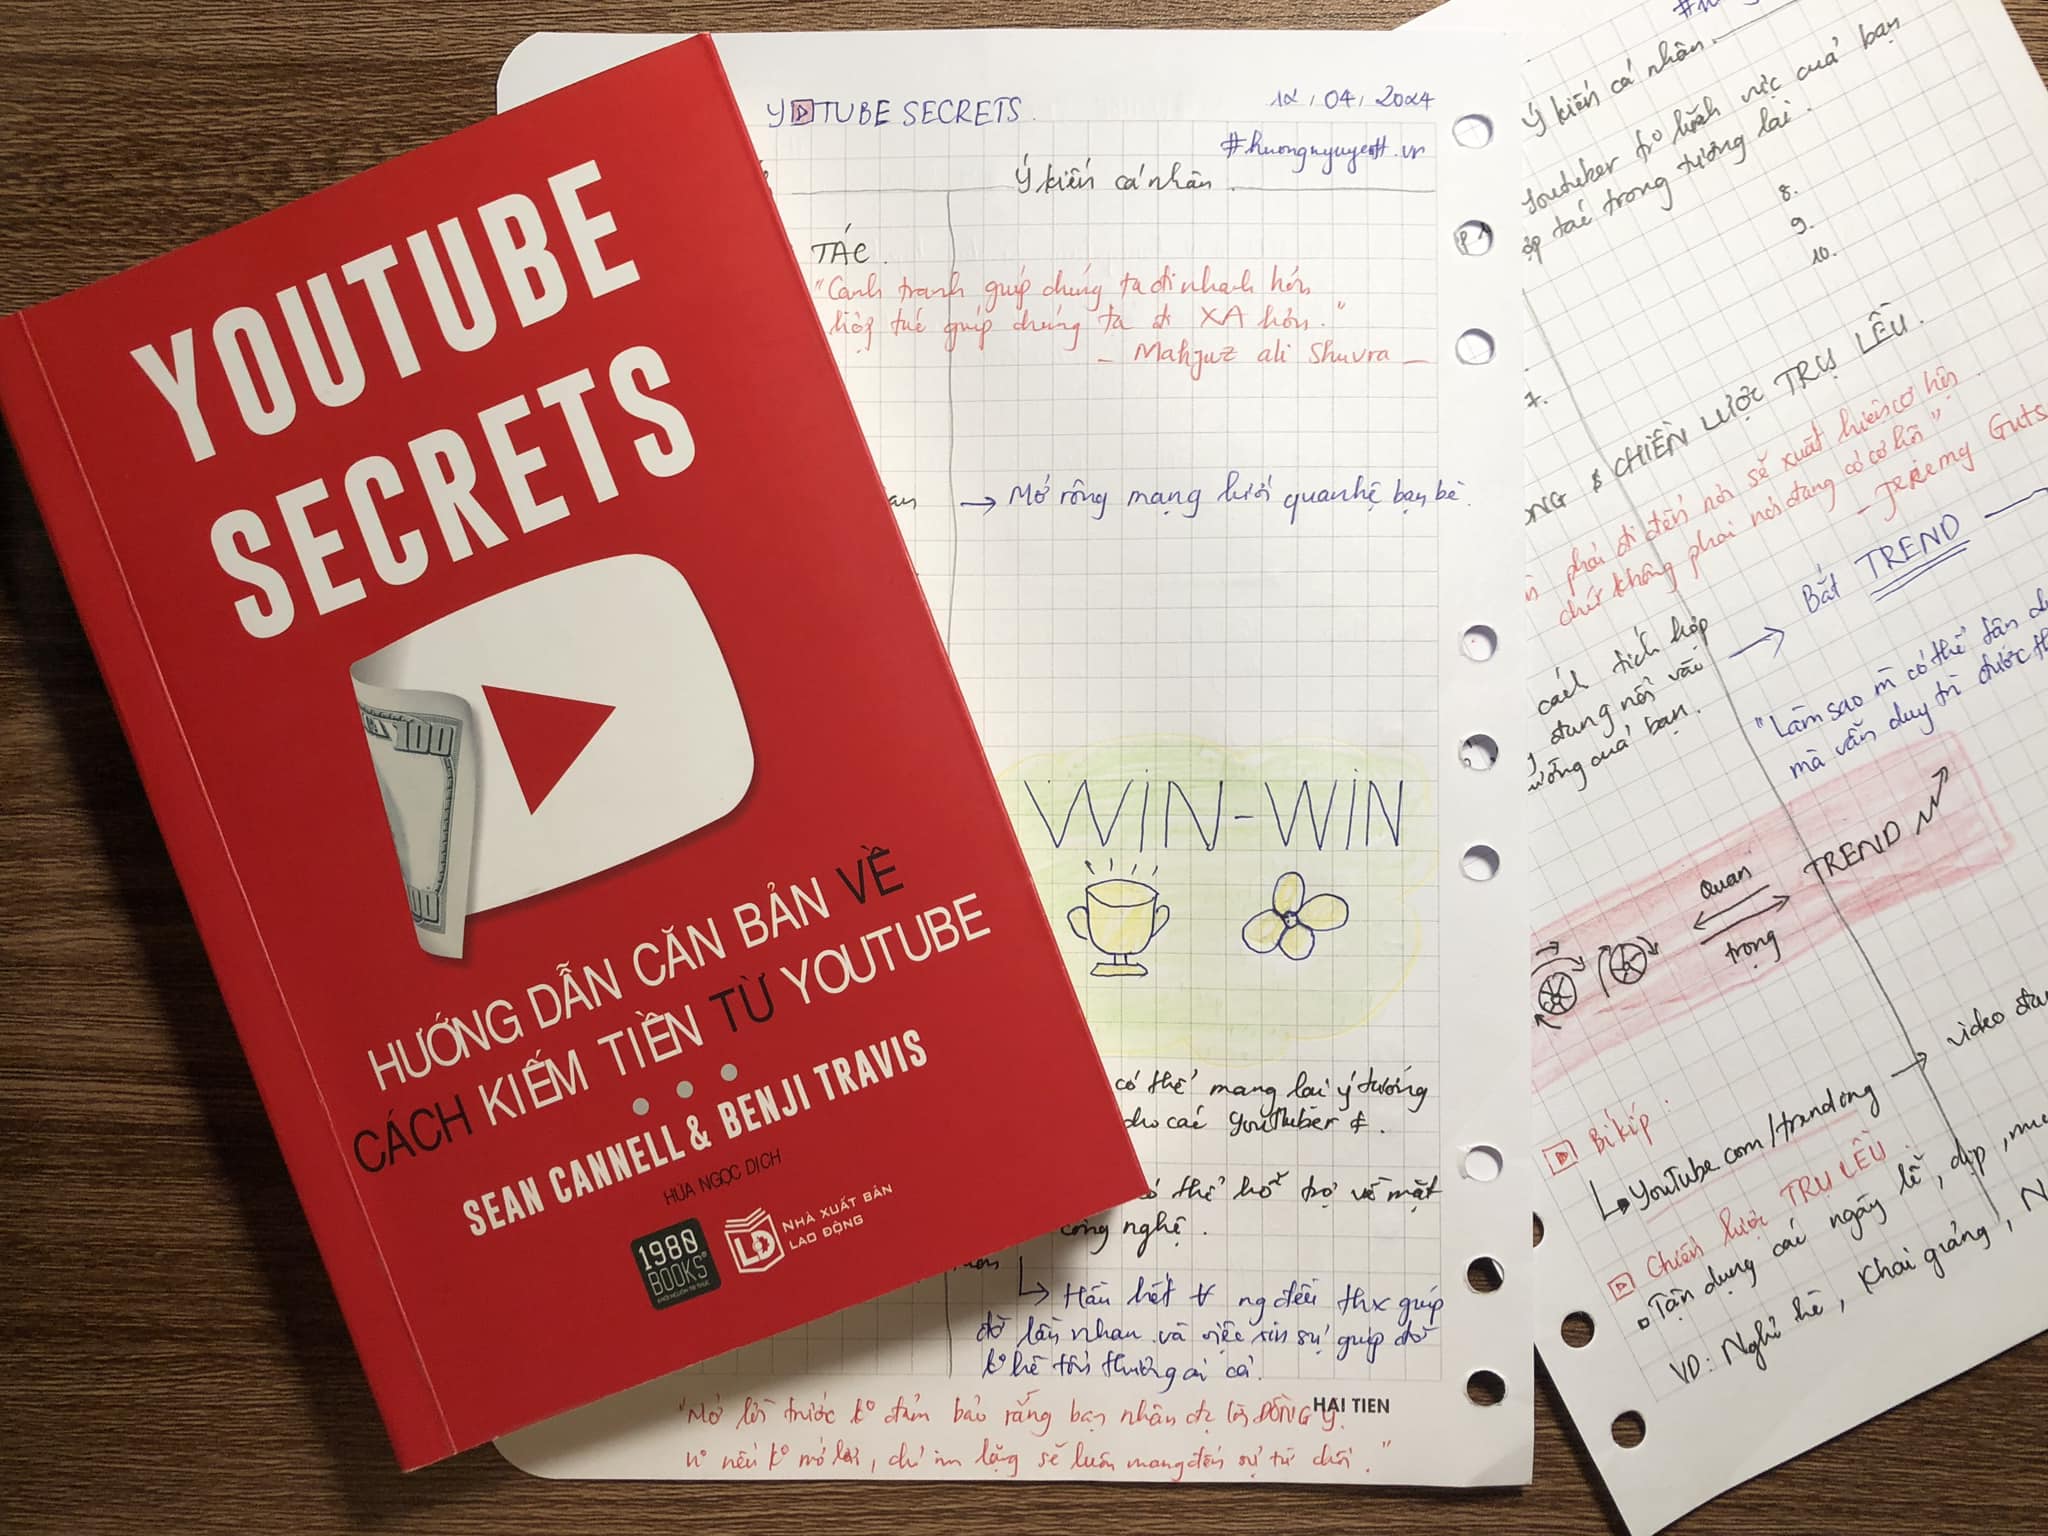 Bài học từ sách YouTube Secrets - Cách kiếm tiền YouTube